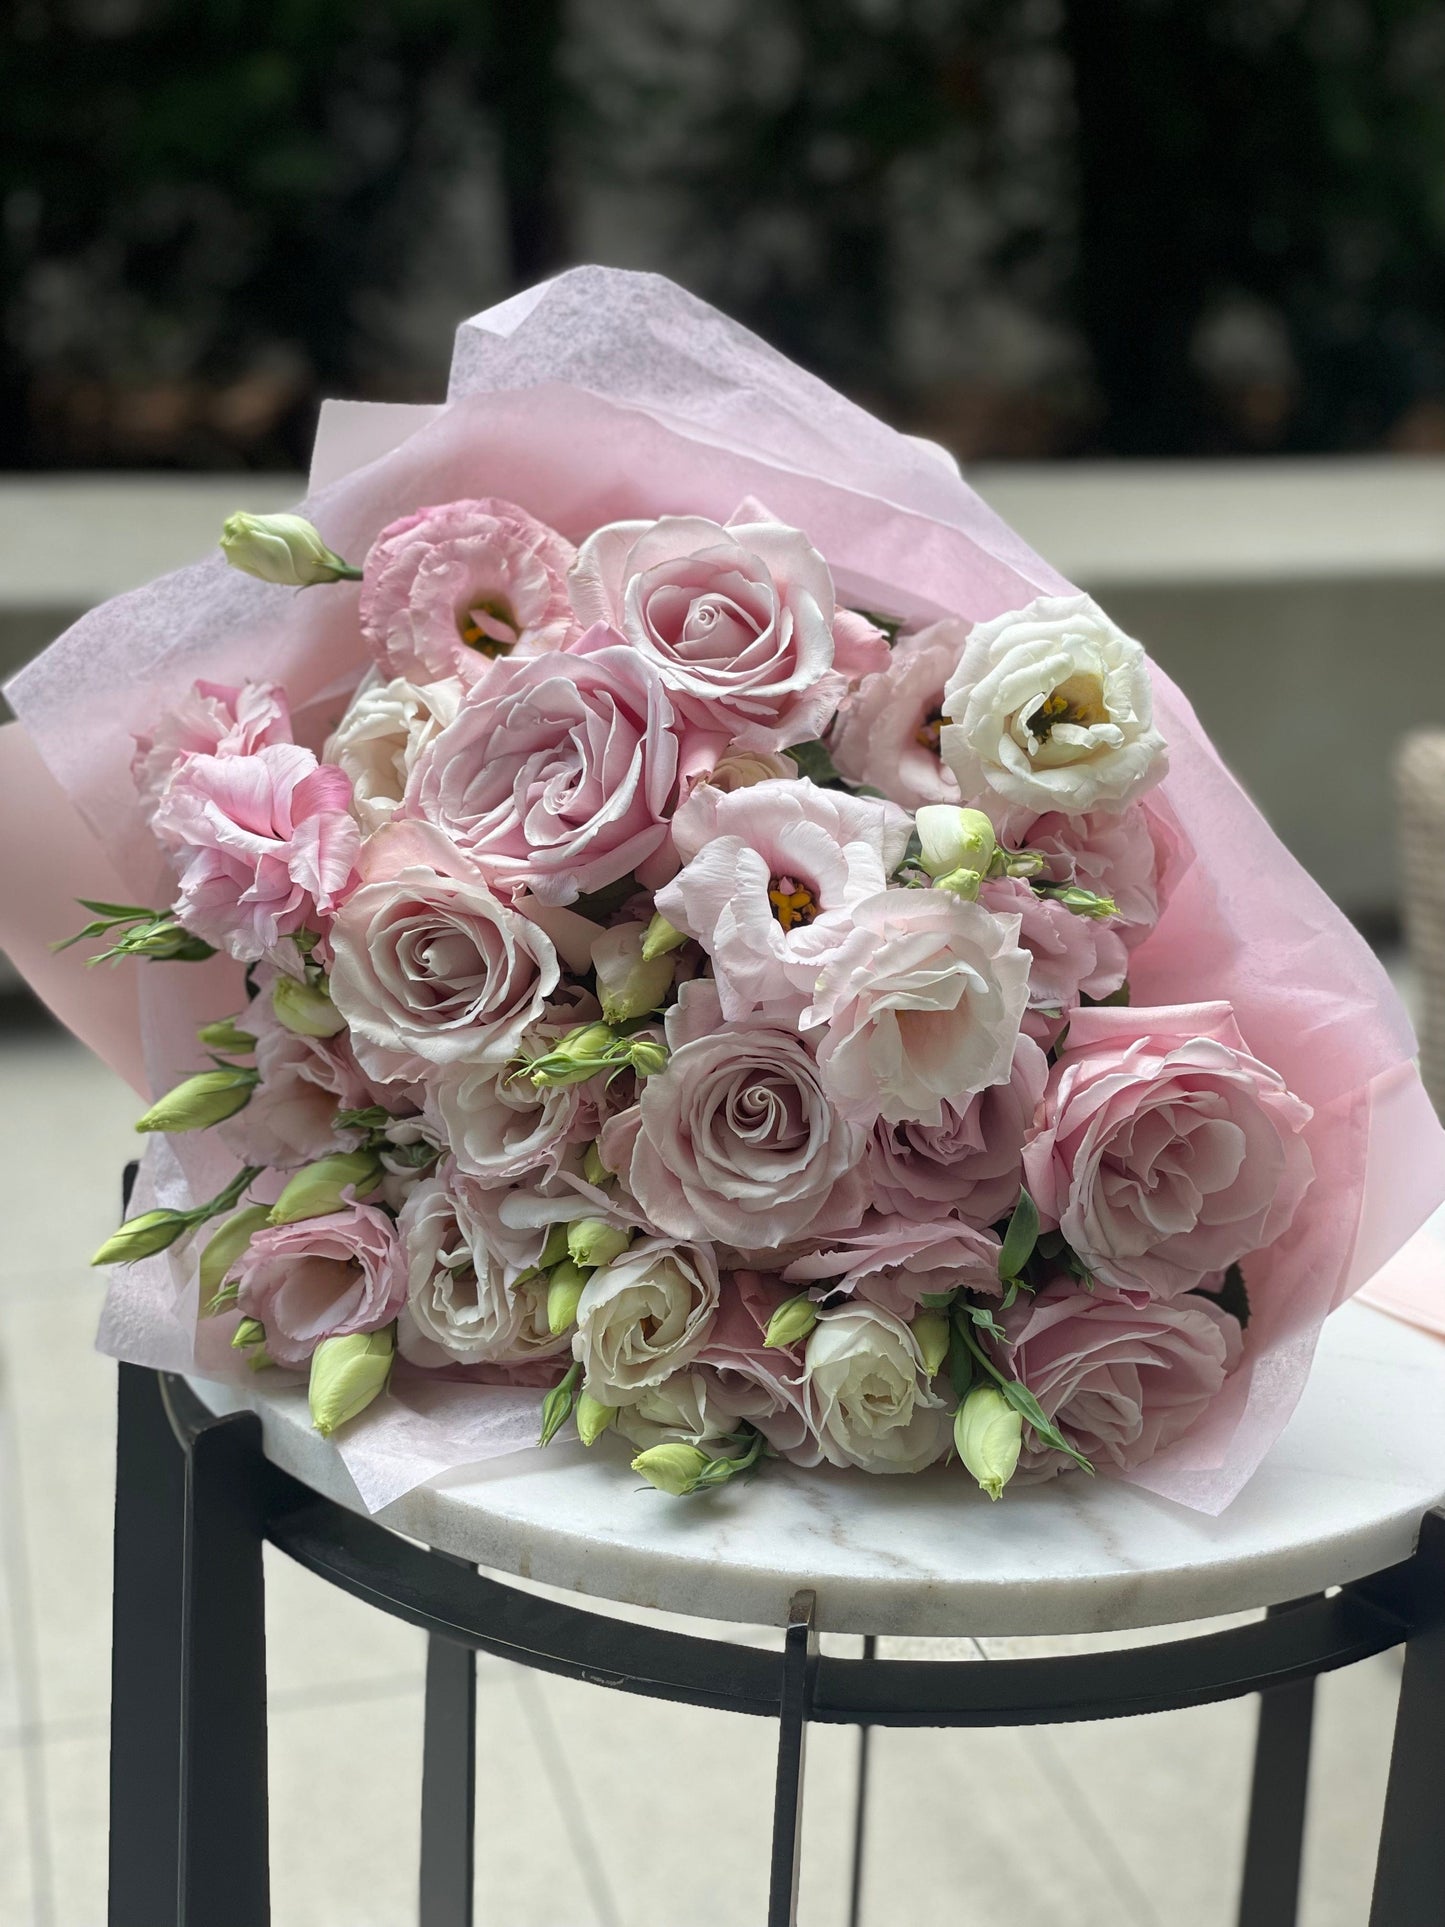 Adorable pink bouquet